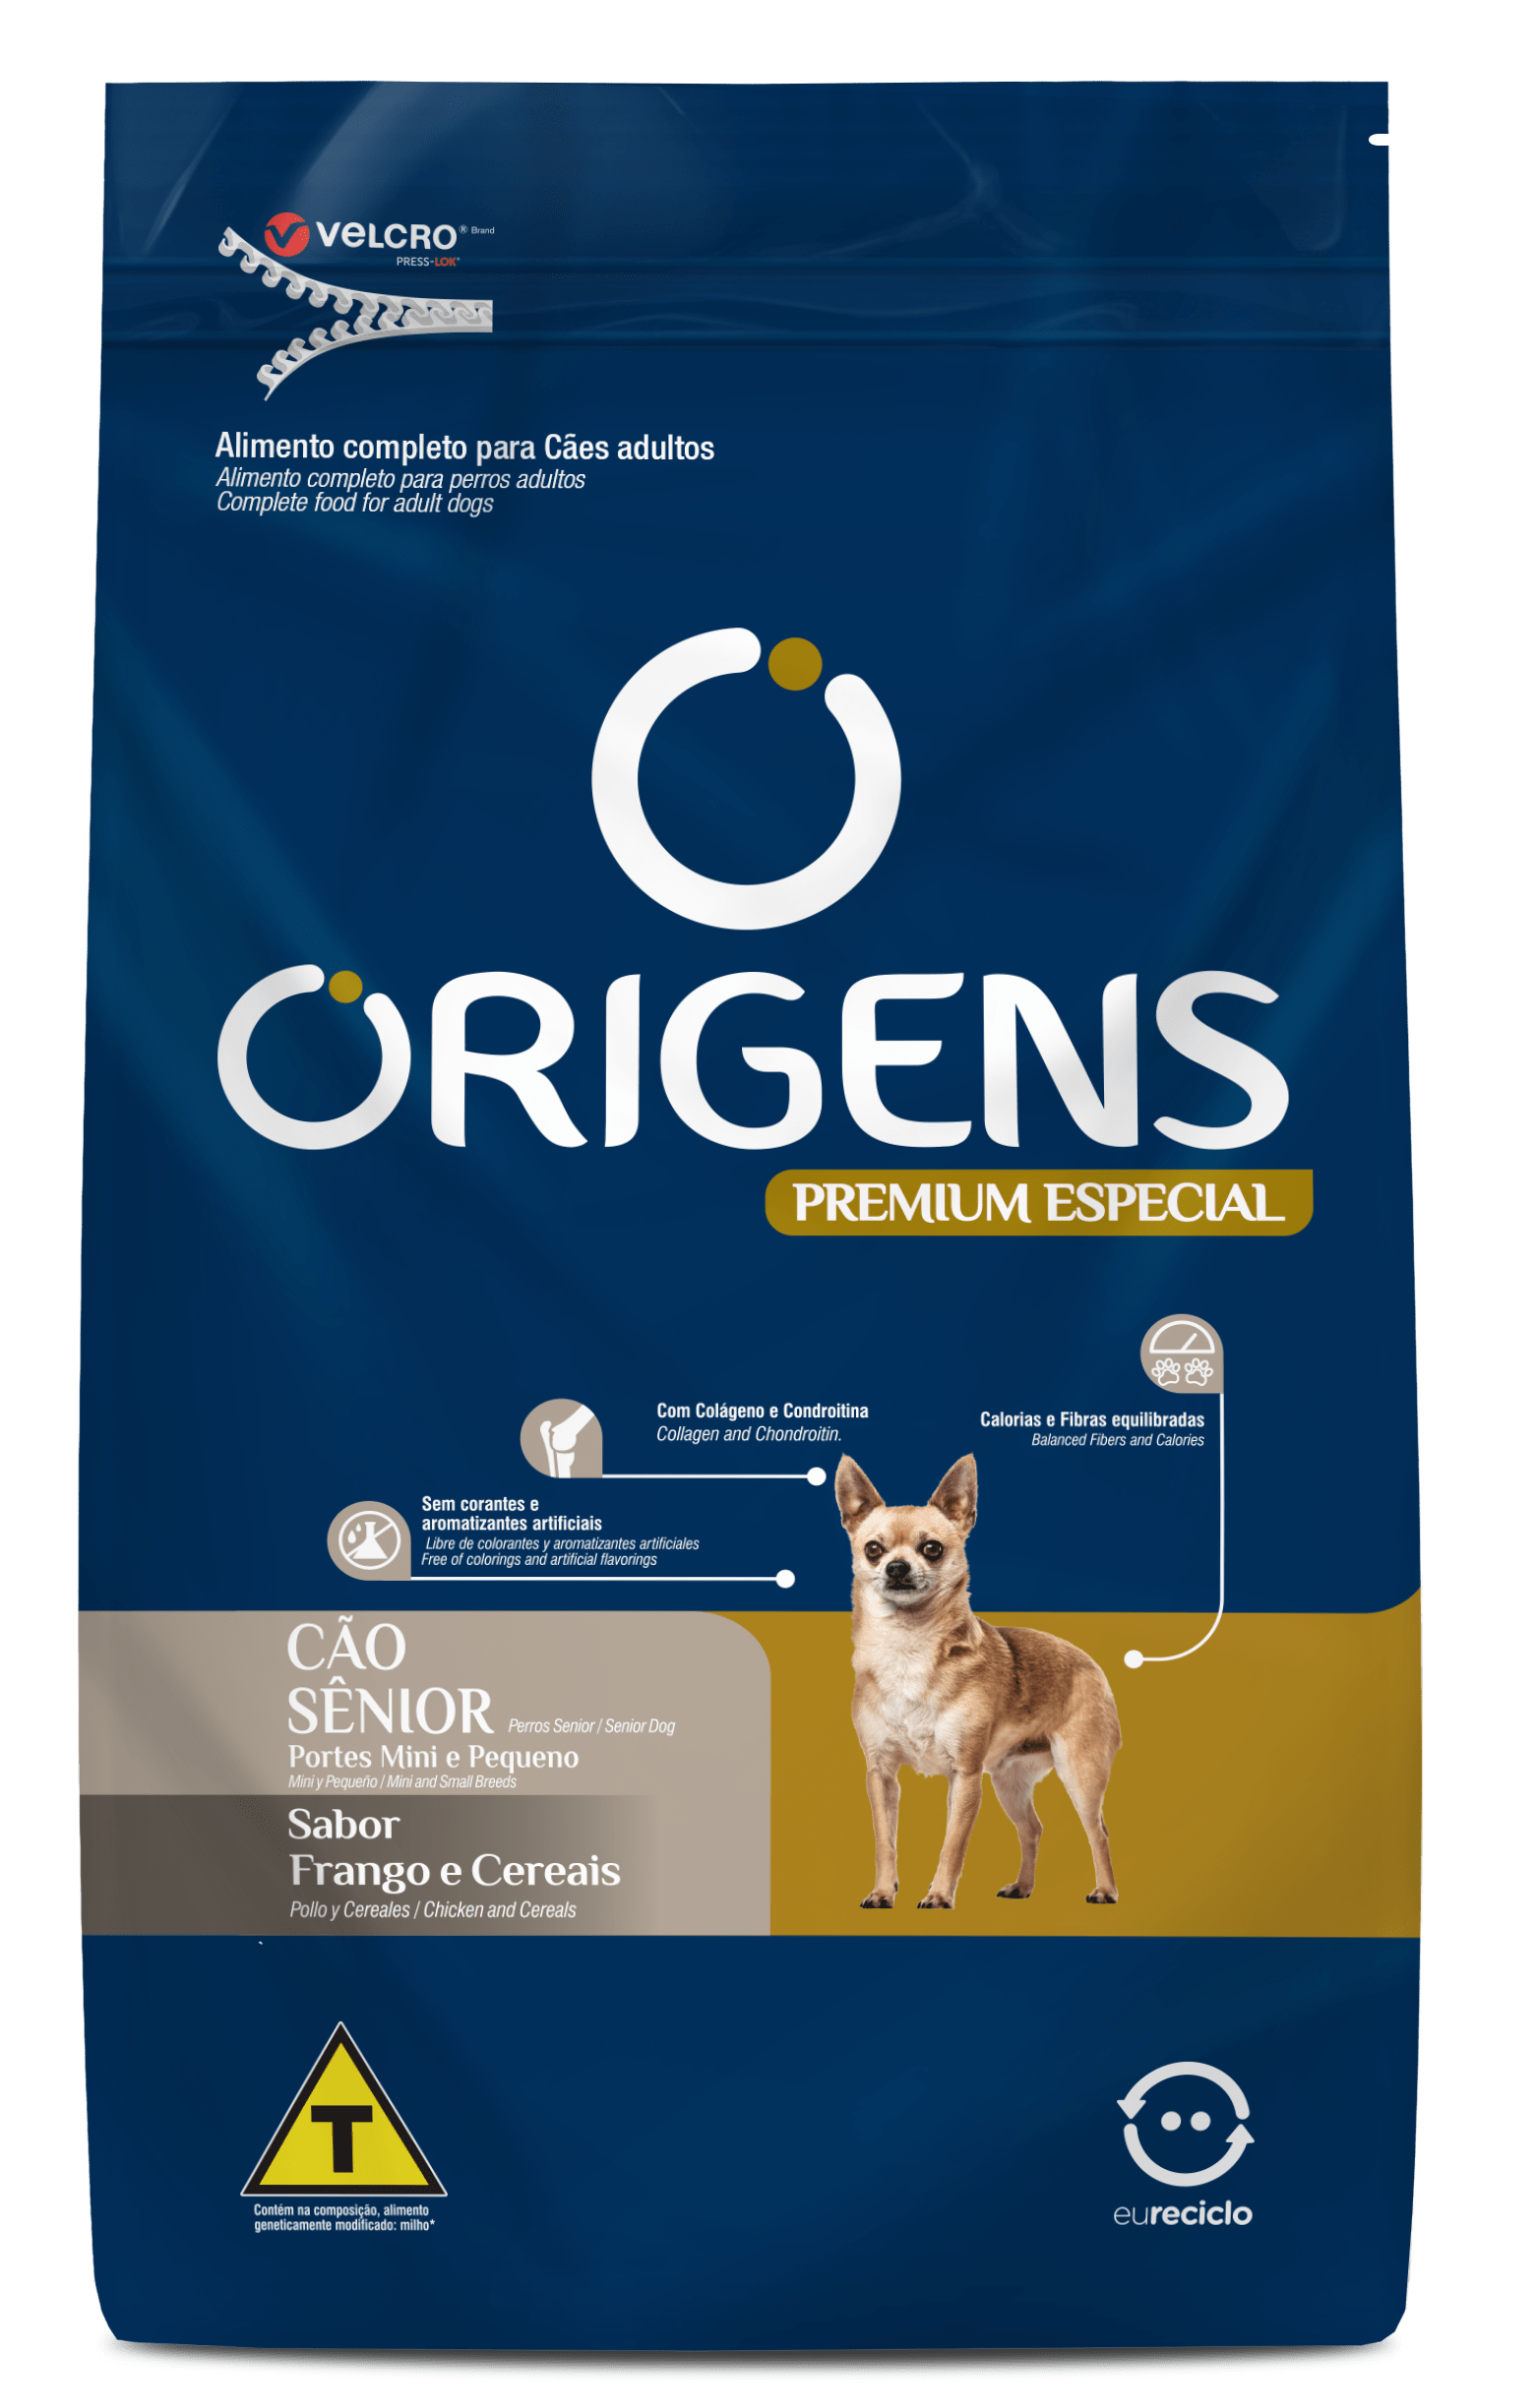 Origens Premium Especial Cães Sênior Portes Mini e Pequeno Sabor Frango e Cereais